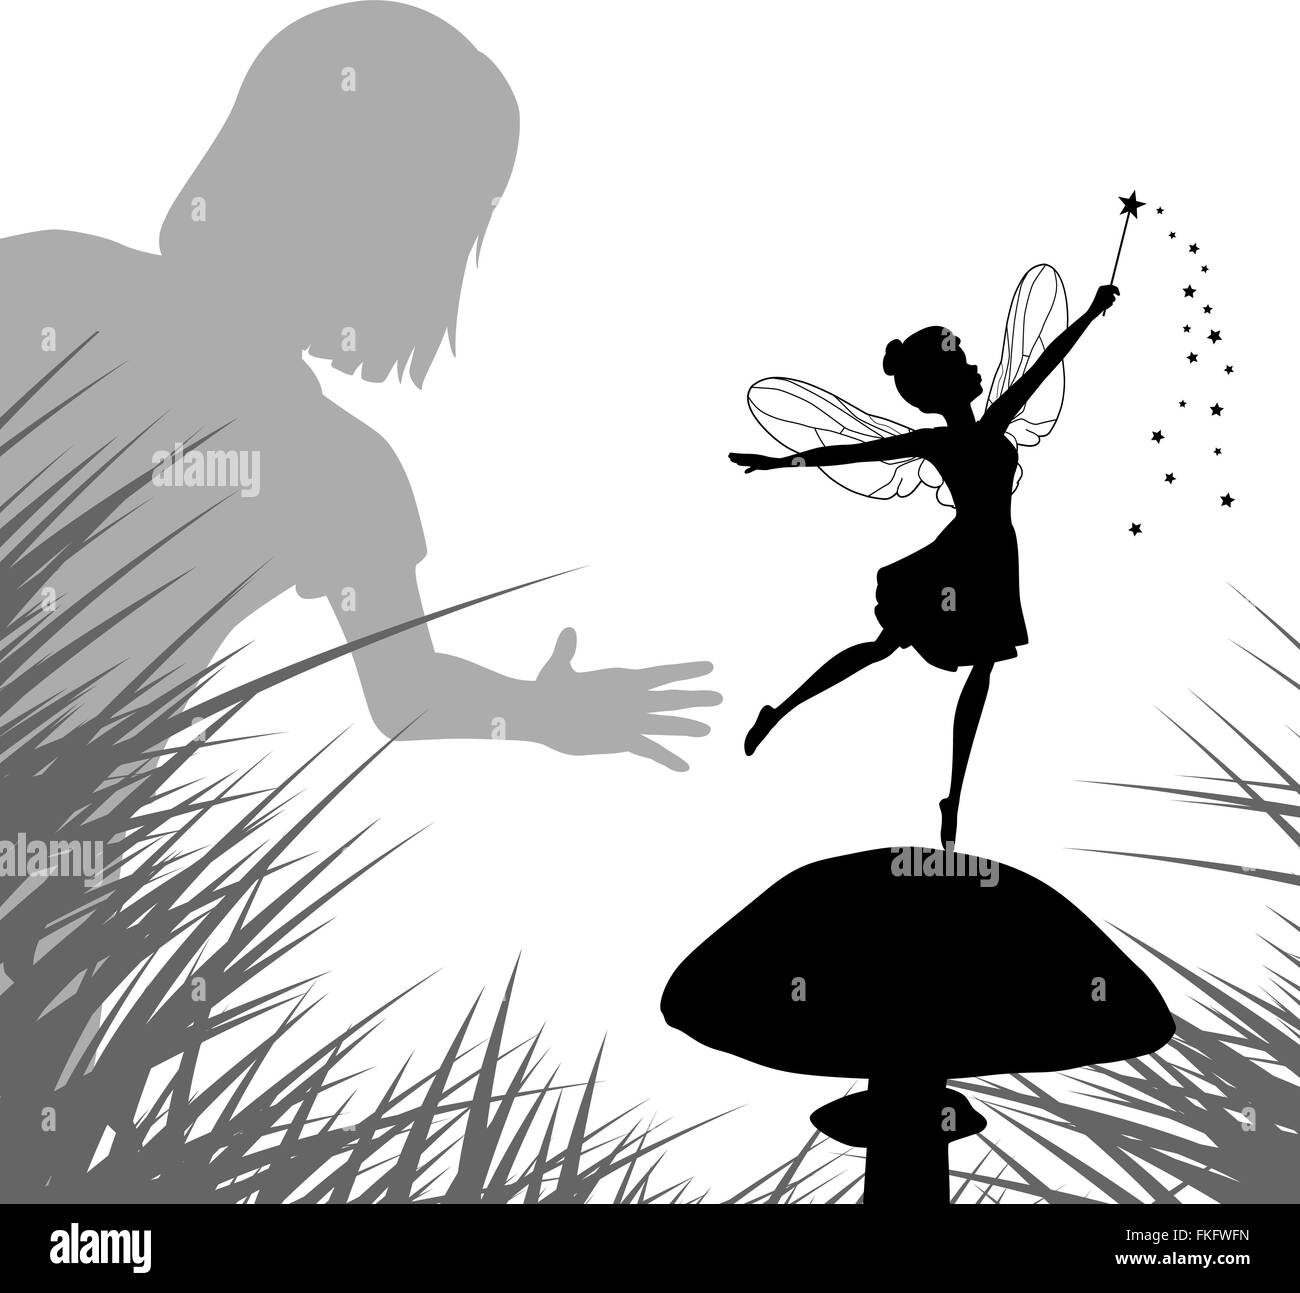 EPS8 bearbeitbares Vektor-Illustration eines jungen Mädchens zu finden, eine Fee tanzen auf einem Pilz Stock Vektor